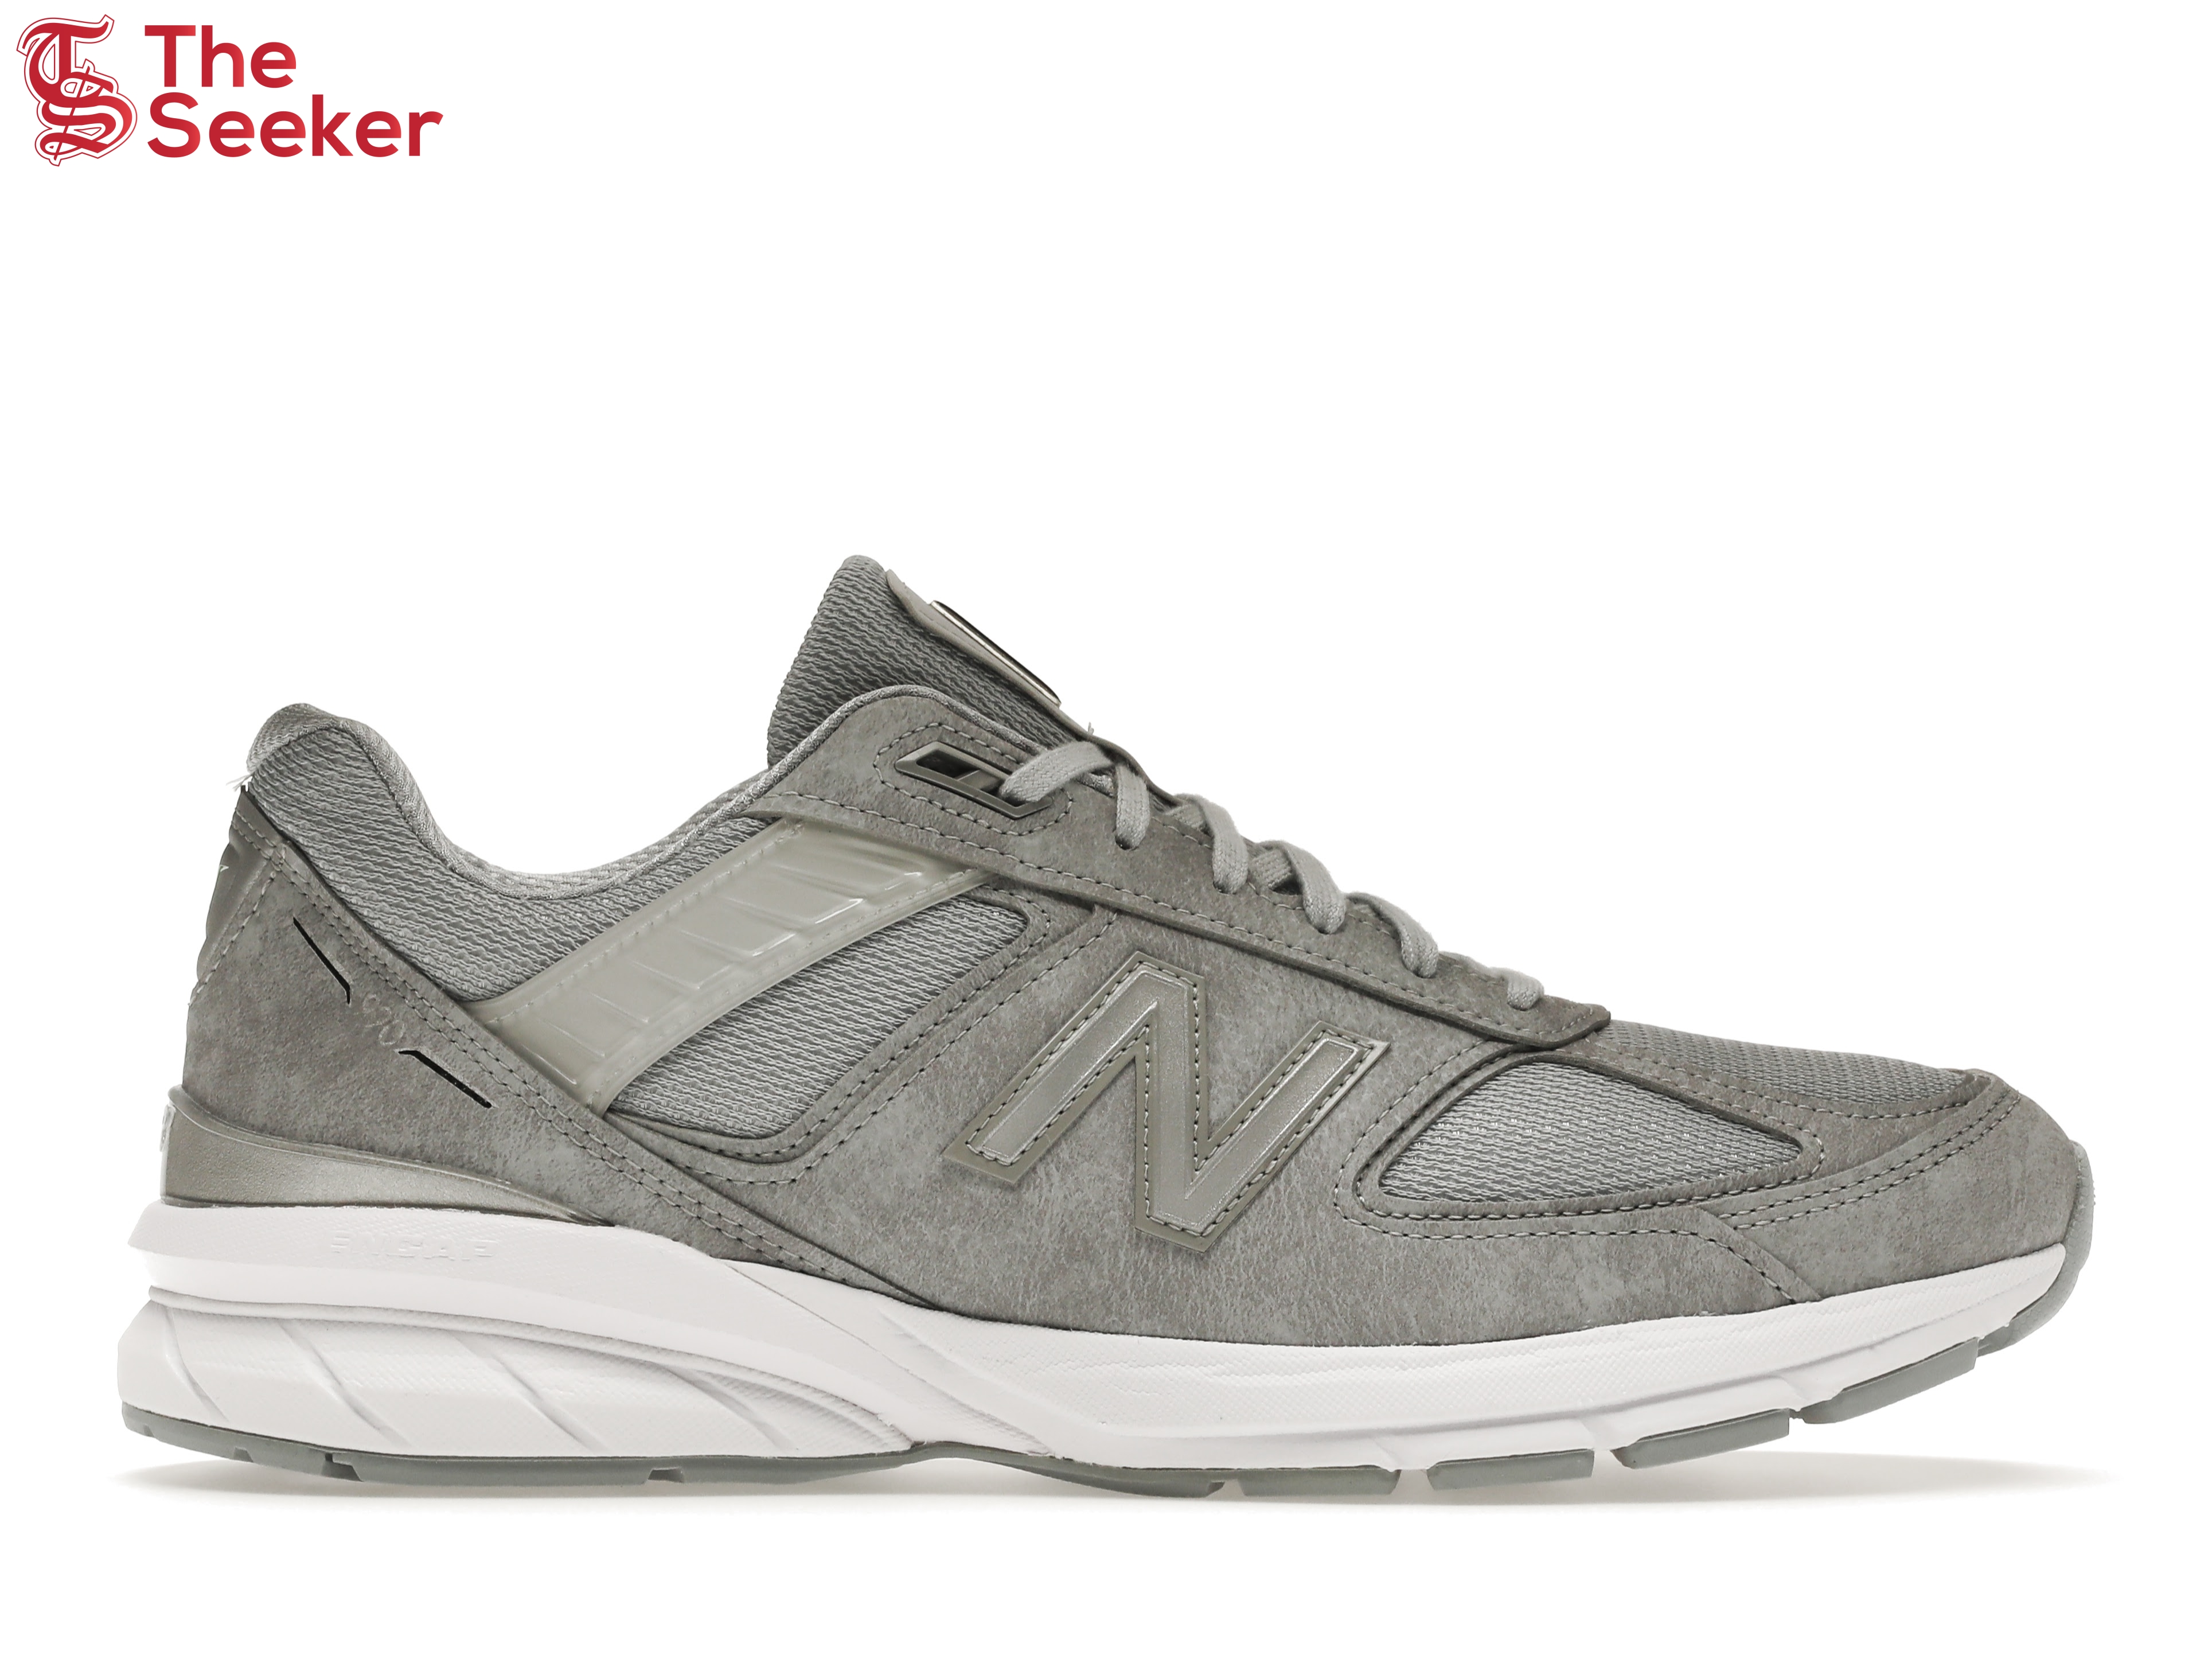 New Balance 990v5 Grey White